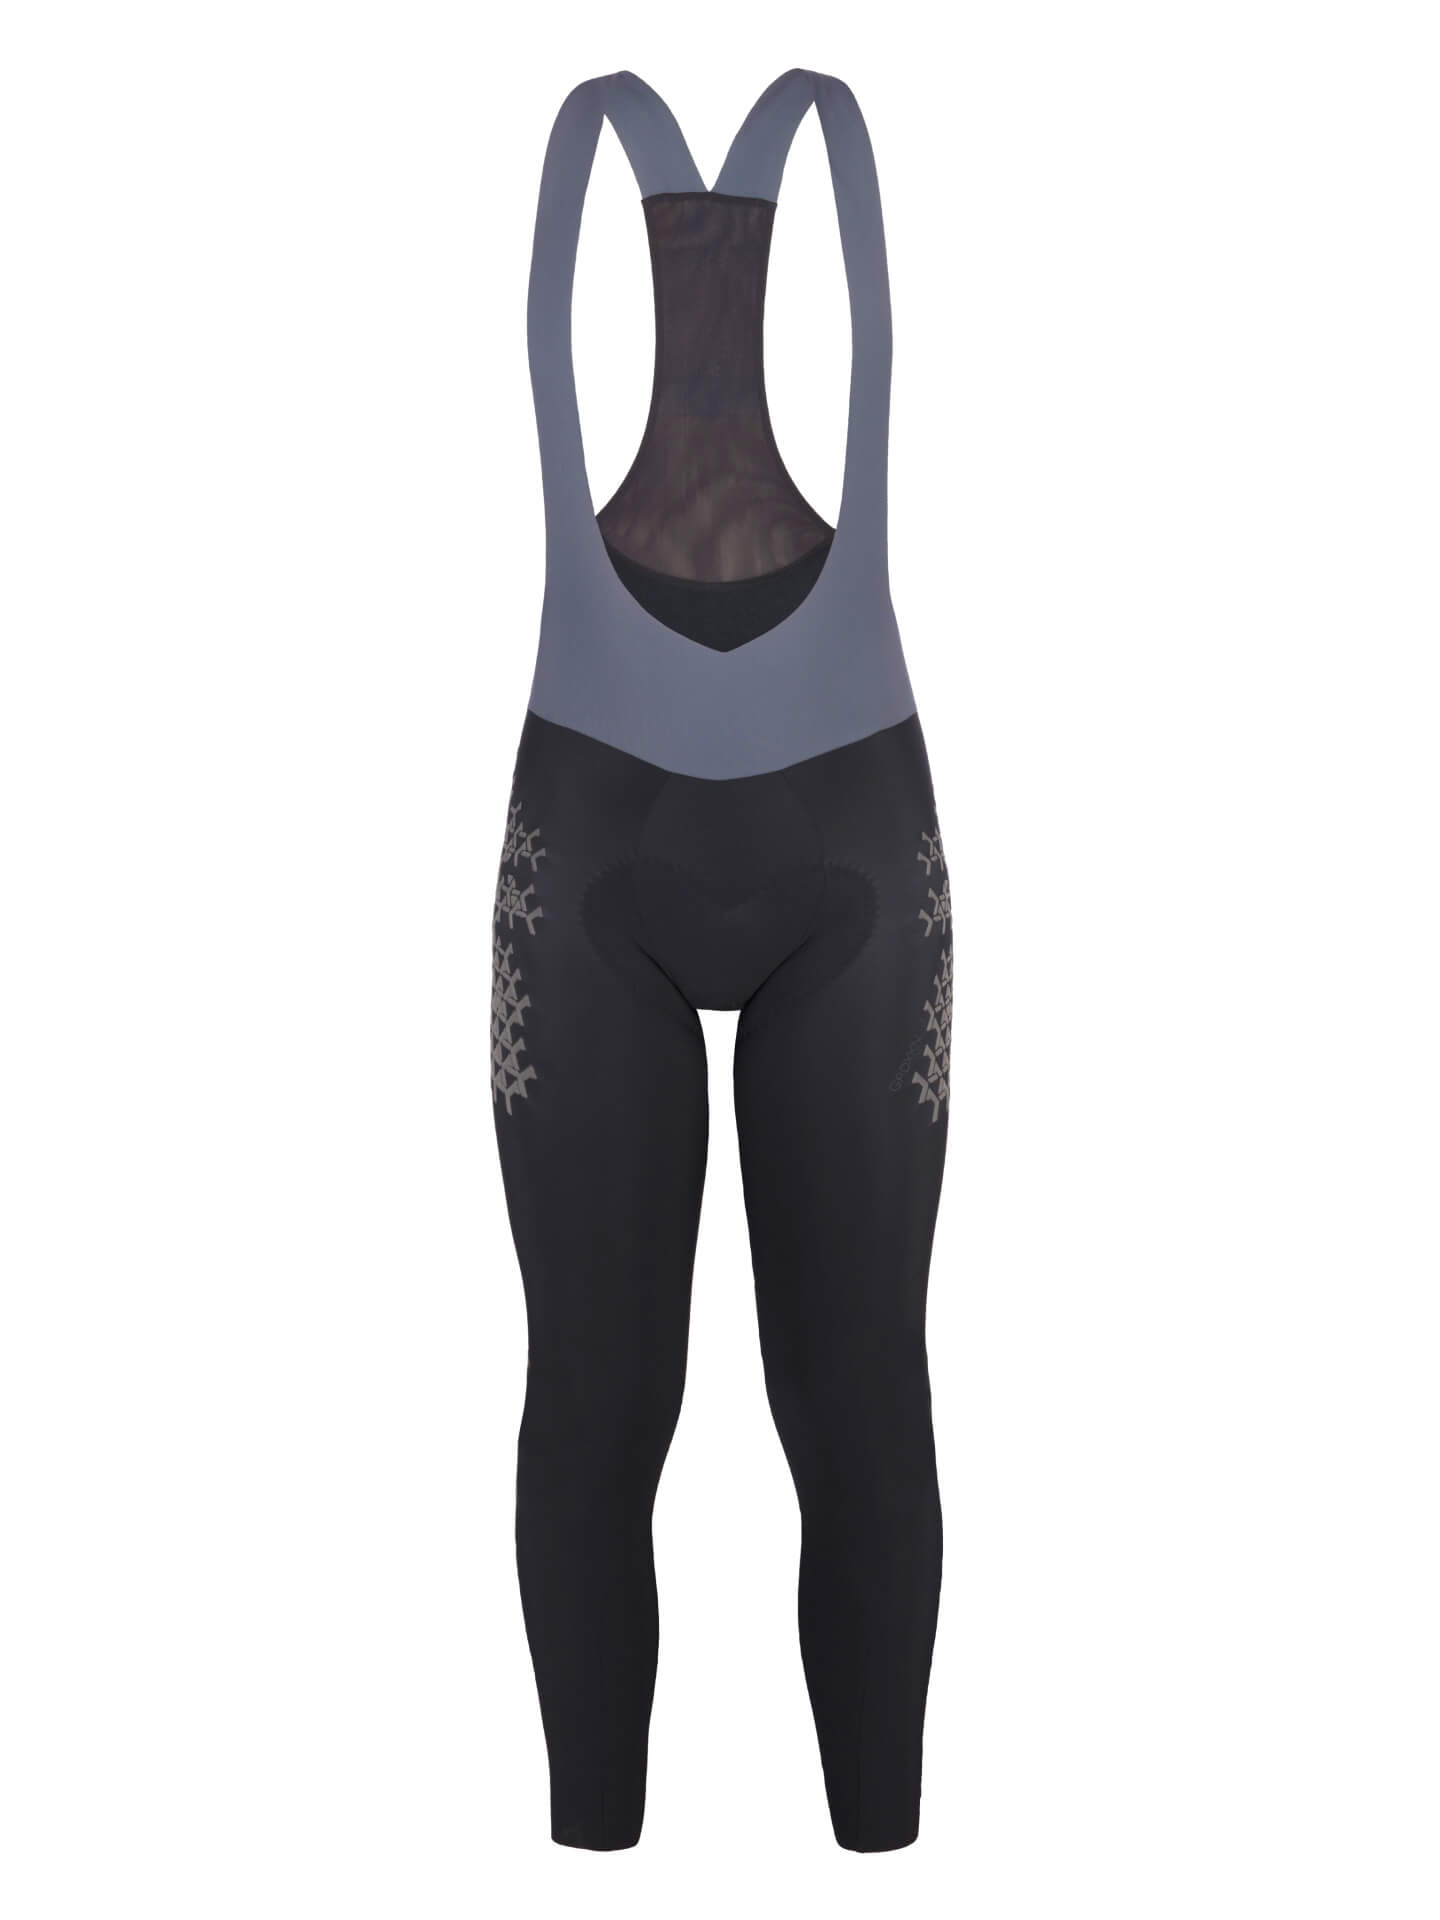 Womens cycling tights: winter, thermal, waterproof, padded long bib shorts  • Q36.5